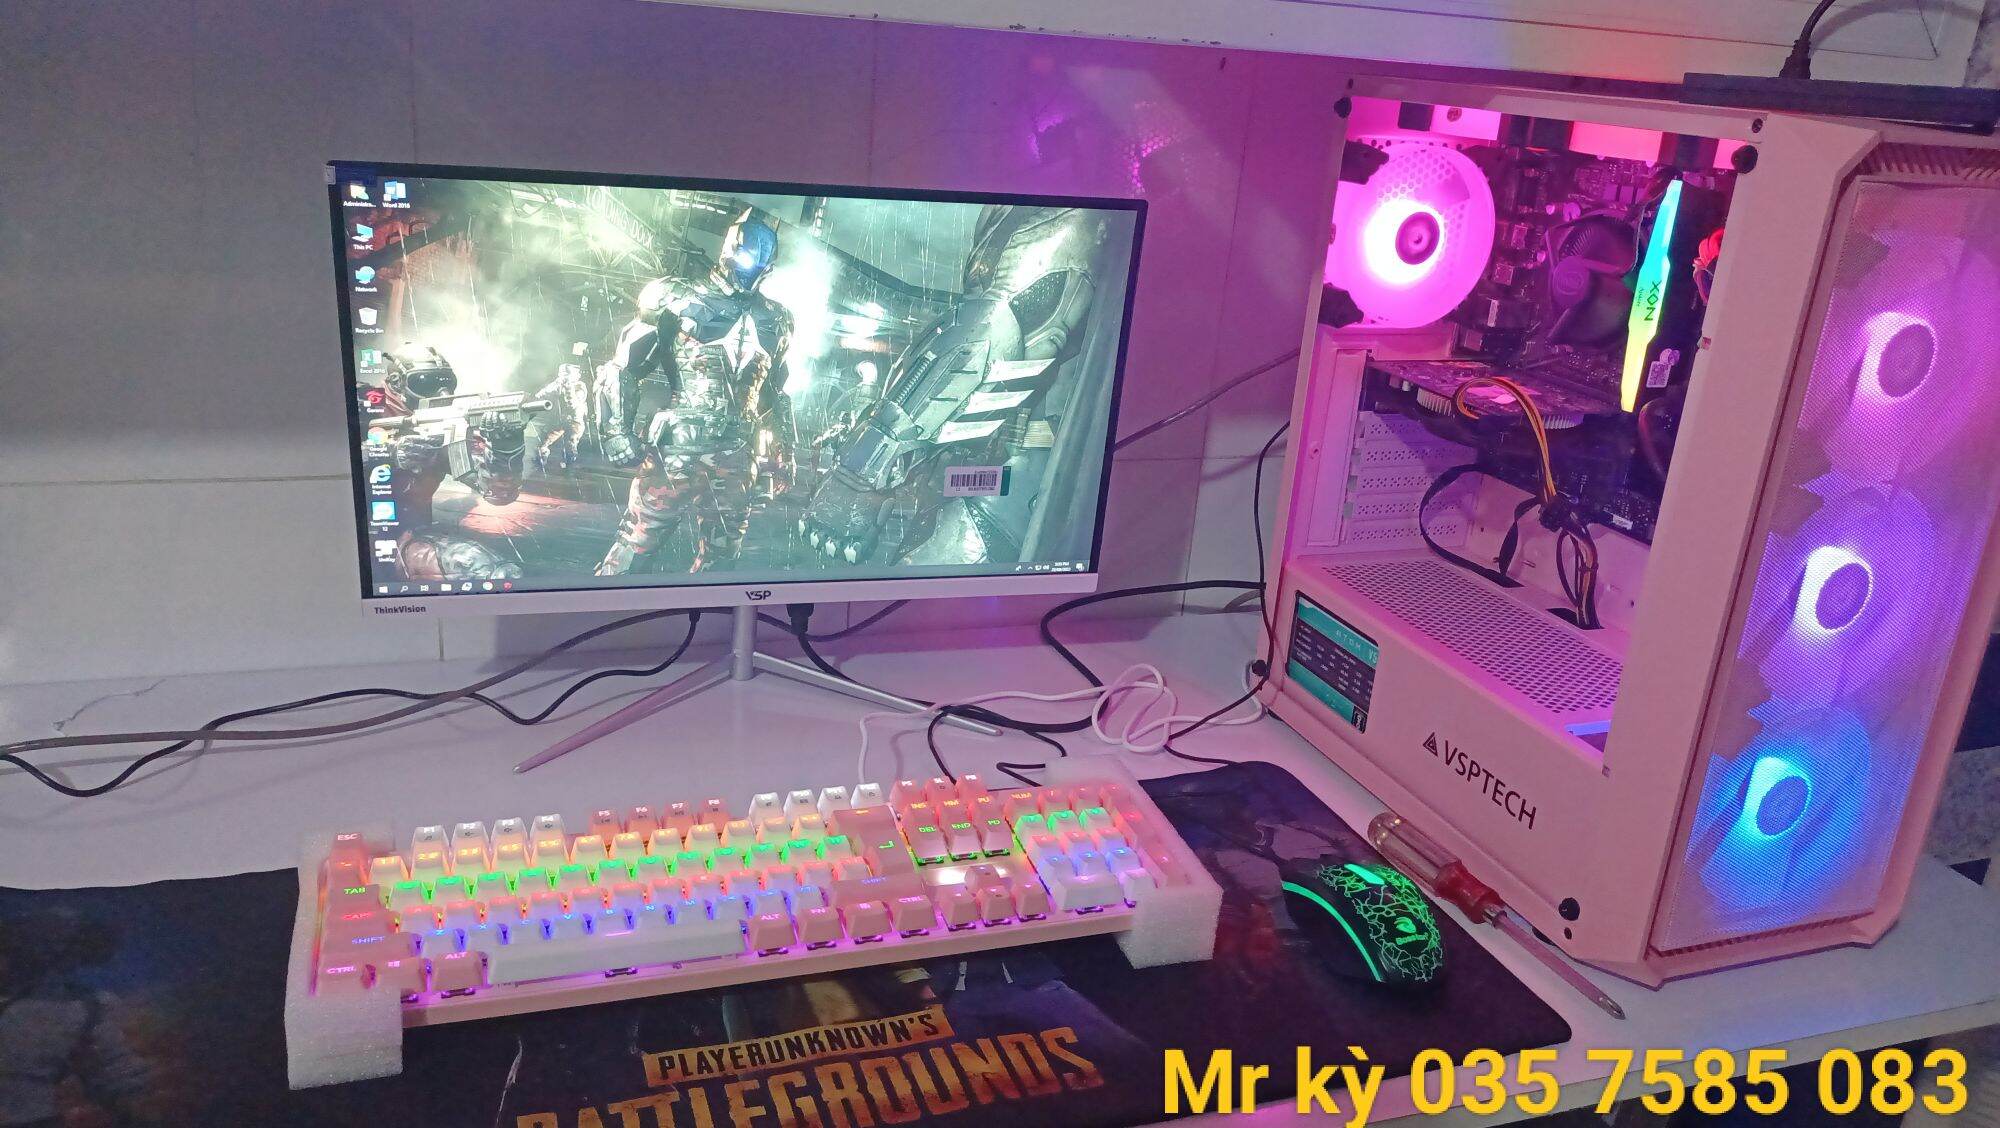 Bộ PC Gaming Led ( Hàng Mới Bảo Hành 12 Tháng ) H510 SK 1200/ Ram 8G  - 16G Bus 3200 Led/CPU G6405 - Core  i3 10105f / SSD 240G/VGA 730 DR5 -GTX 750 DR5  - GTX 1660s 6G D6/ Màn 22in - 24in phẳng ,Cong full viền full HD 1920 x 1080 .